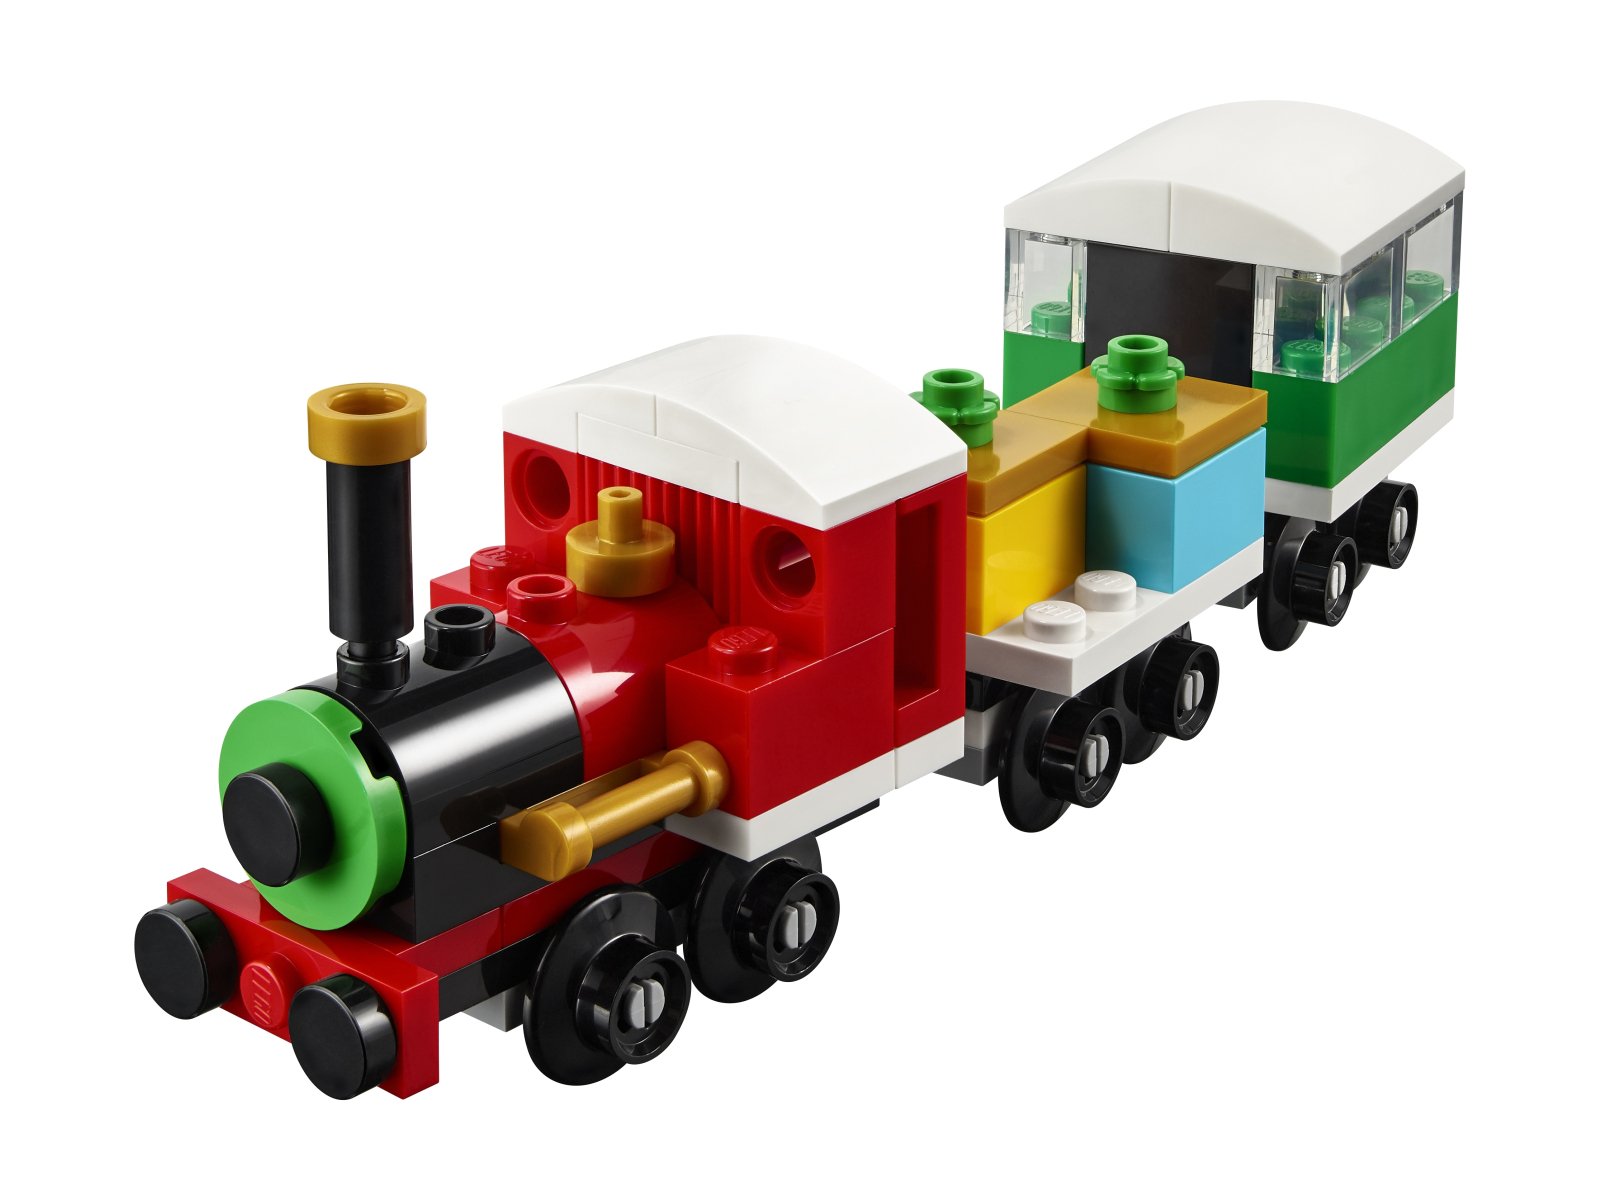 LEGO 30584 Creator Świąteczny pociąg